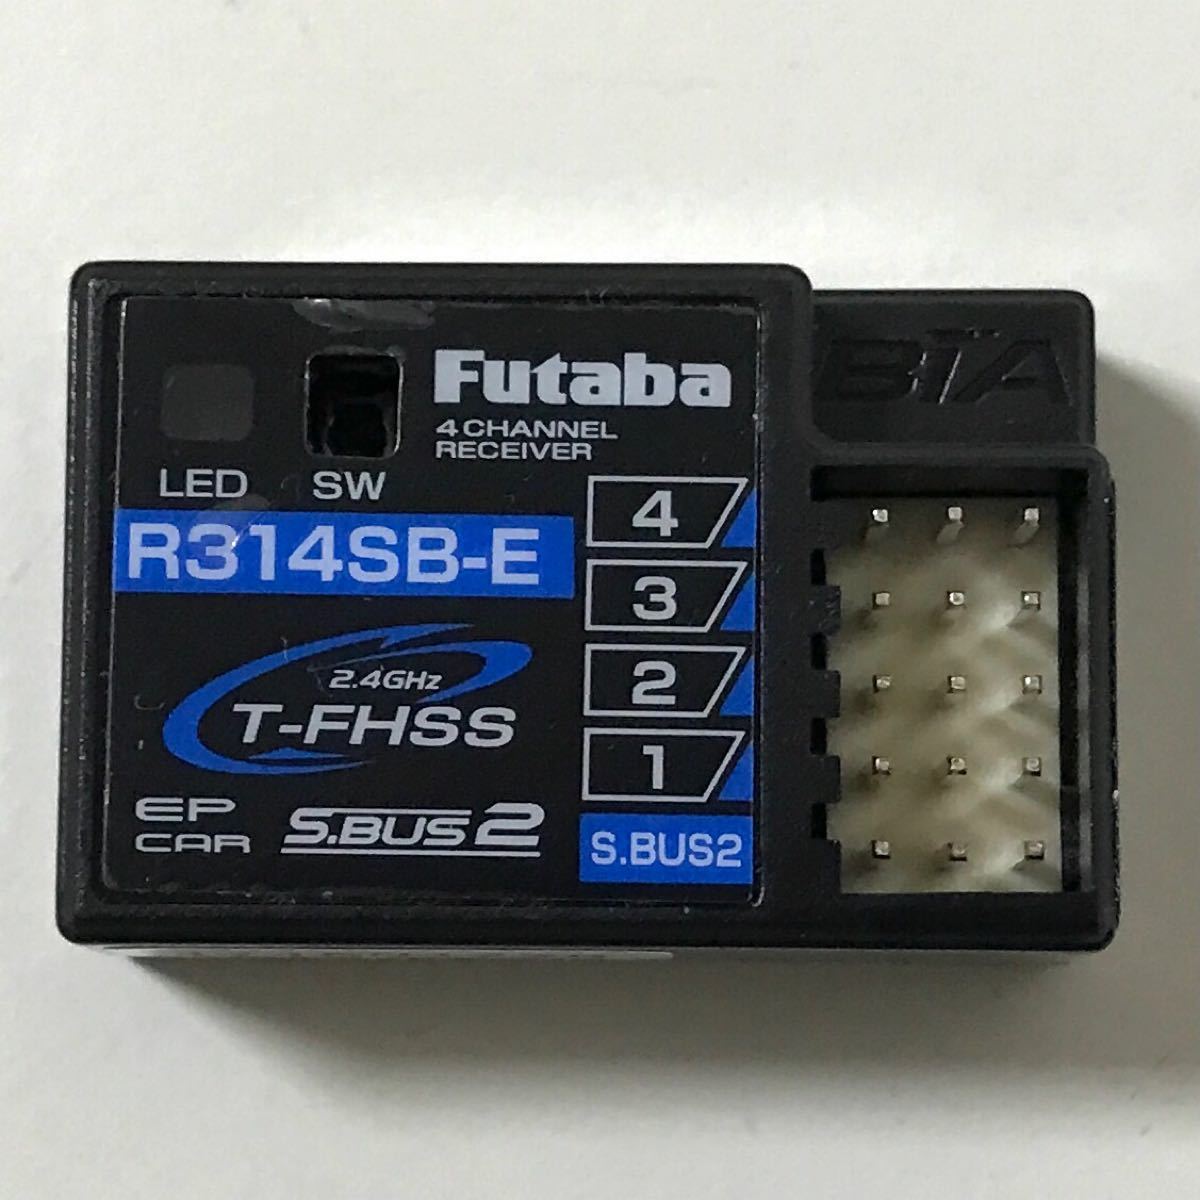 フタバ 7PXR 受信機R314SB-E ケース付き-